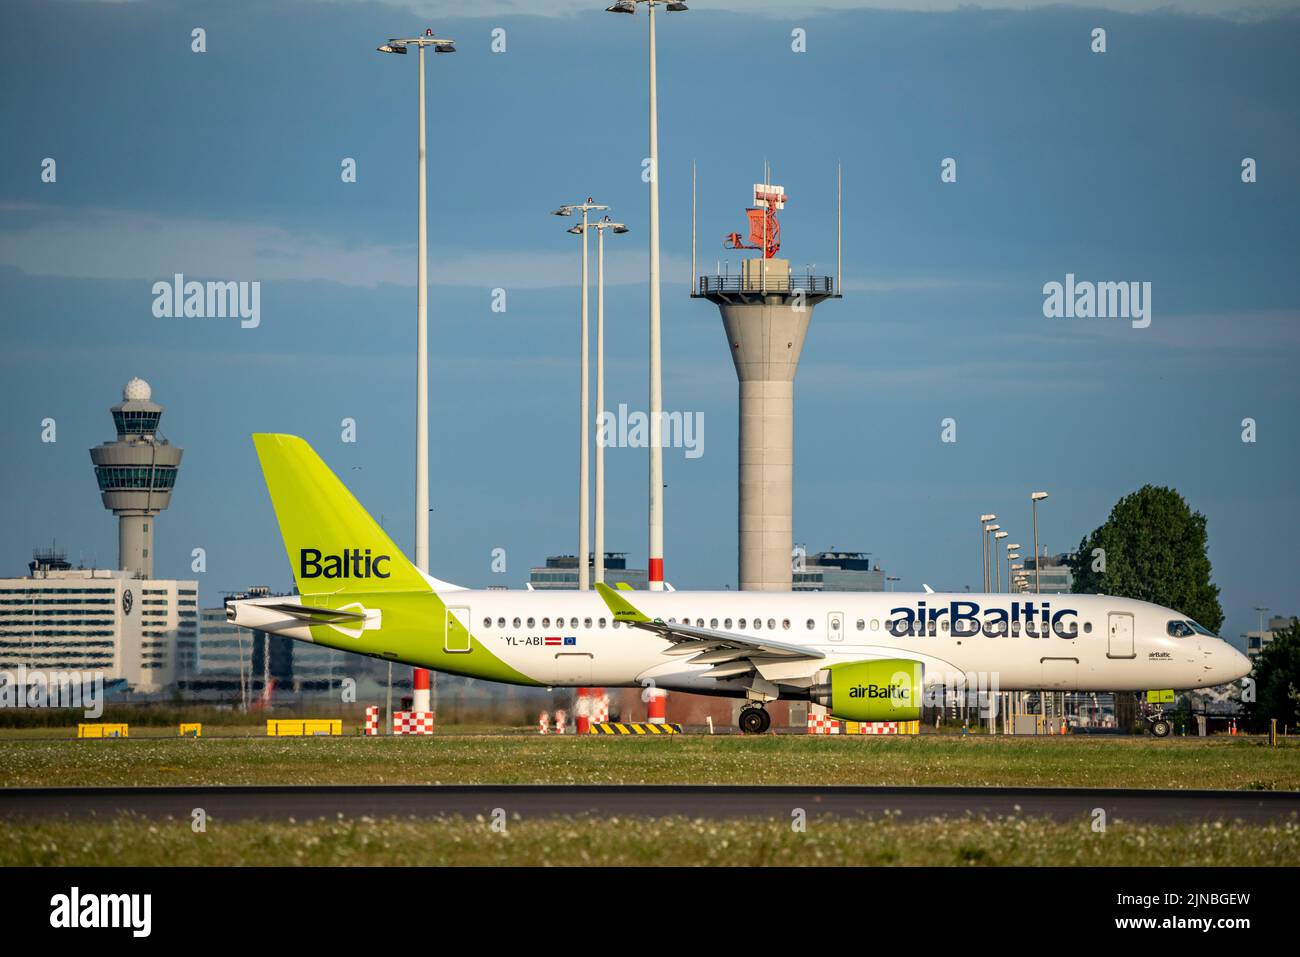 Amsterdam Shiphol Airport, Polderbaan, una de las 6 pistas de aterrizaje, torre de control de tráfico aéreo, en la vía de taxi para el despegue, YL-abi, Air Baltic Airbus A220-300. Foto de stock